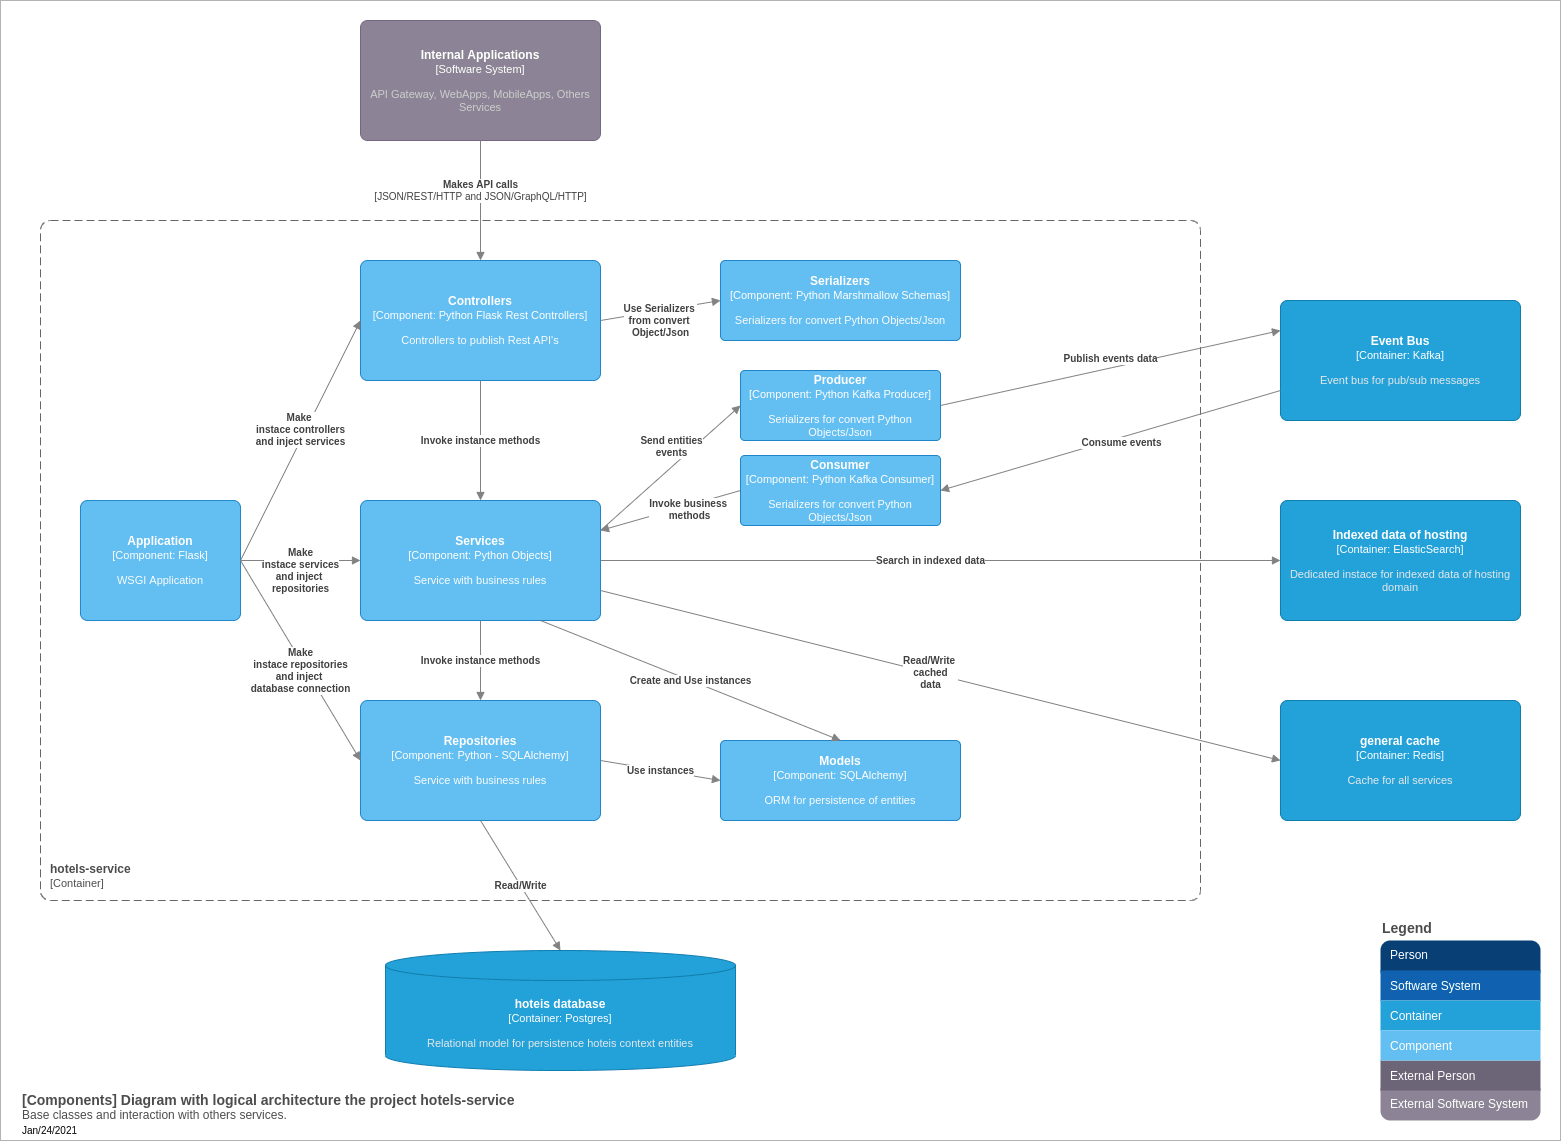 Diagrama de componentes